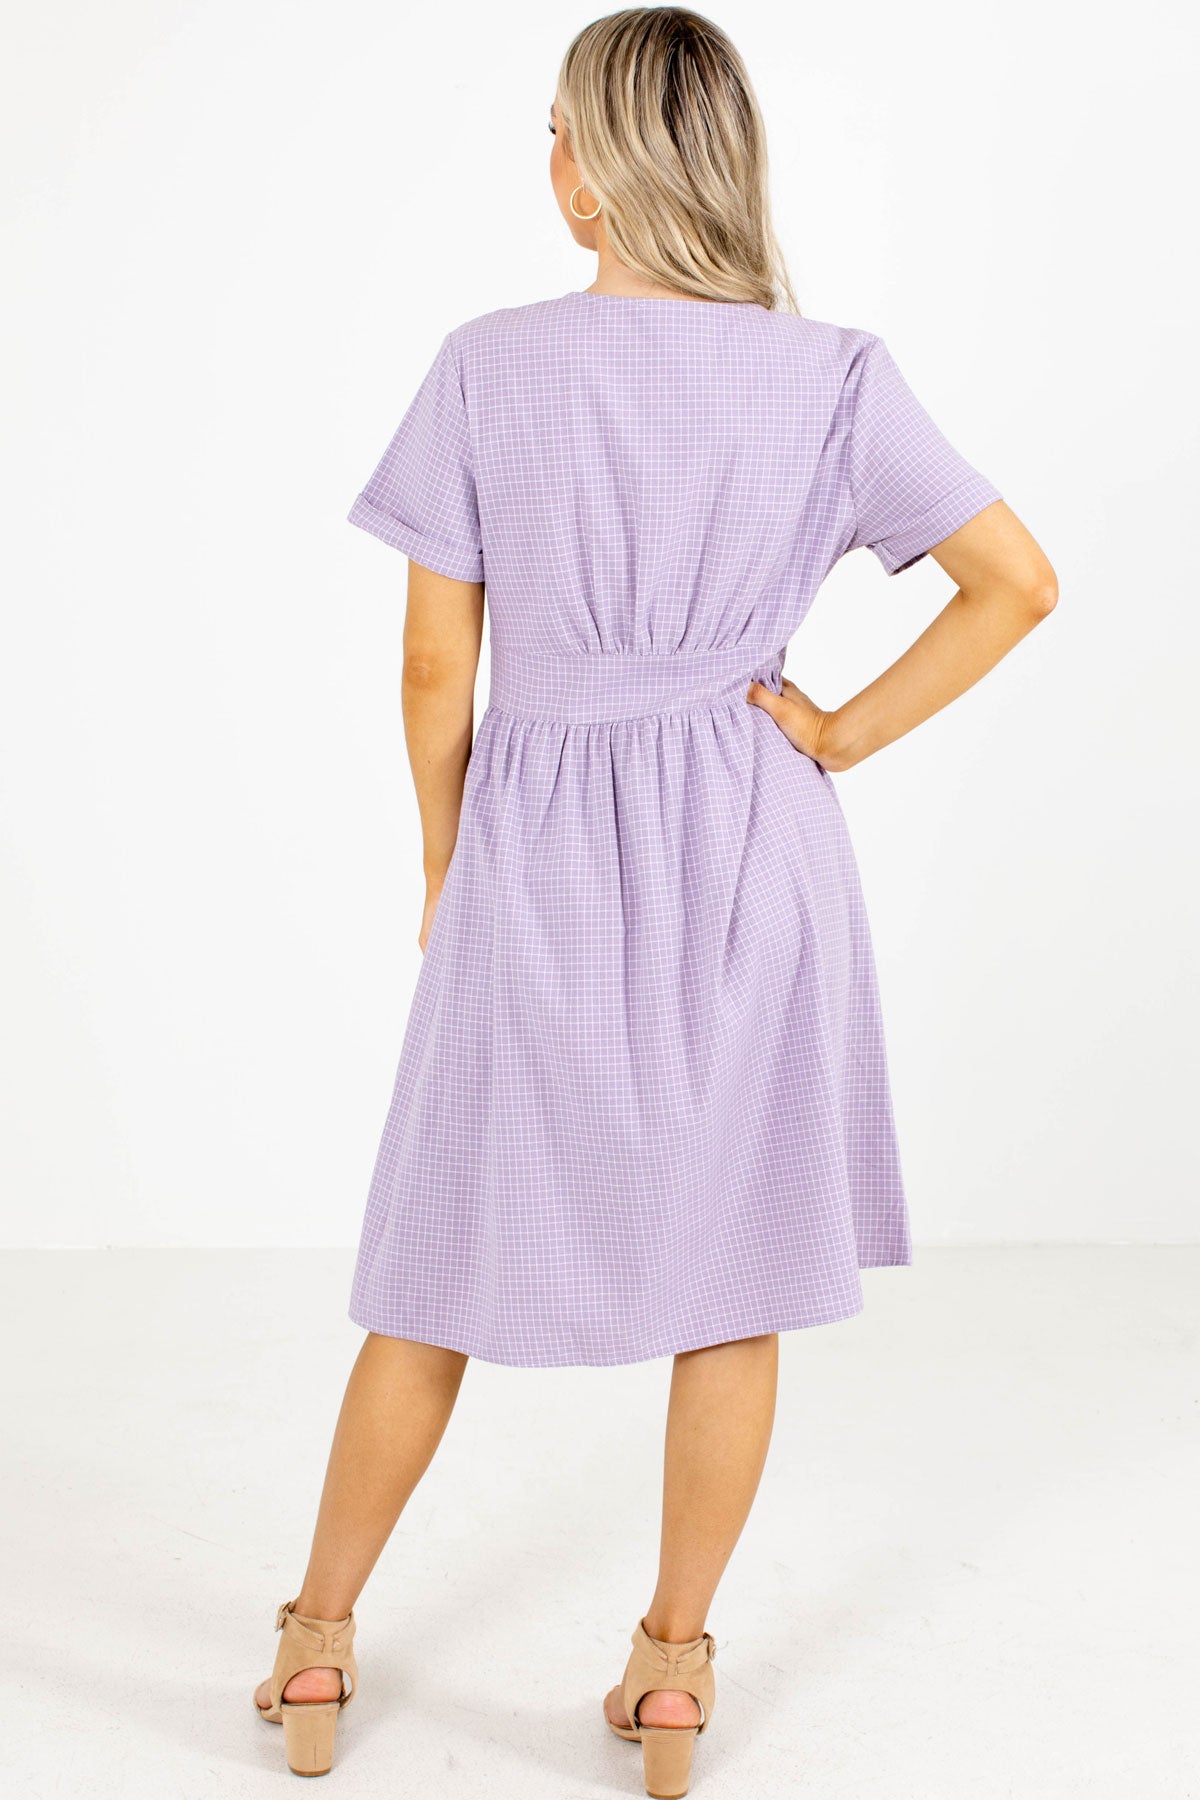 2021 Fashion Dress in Purple.